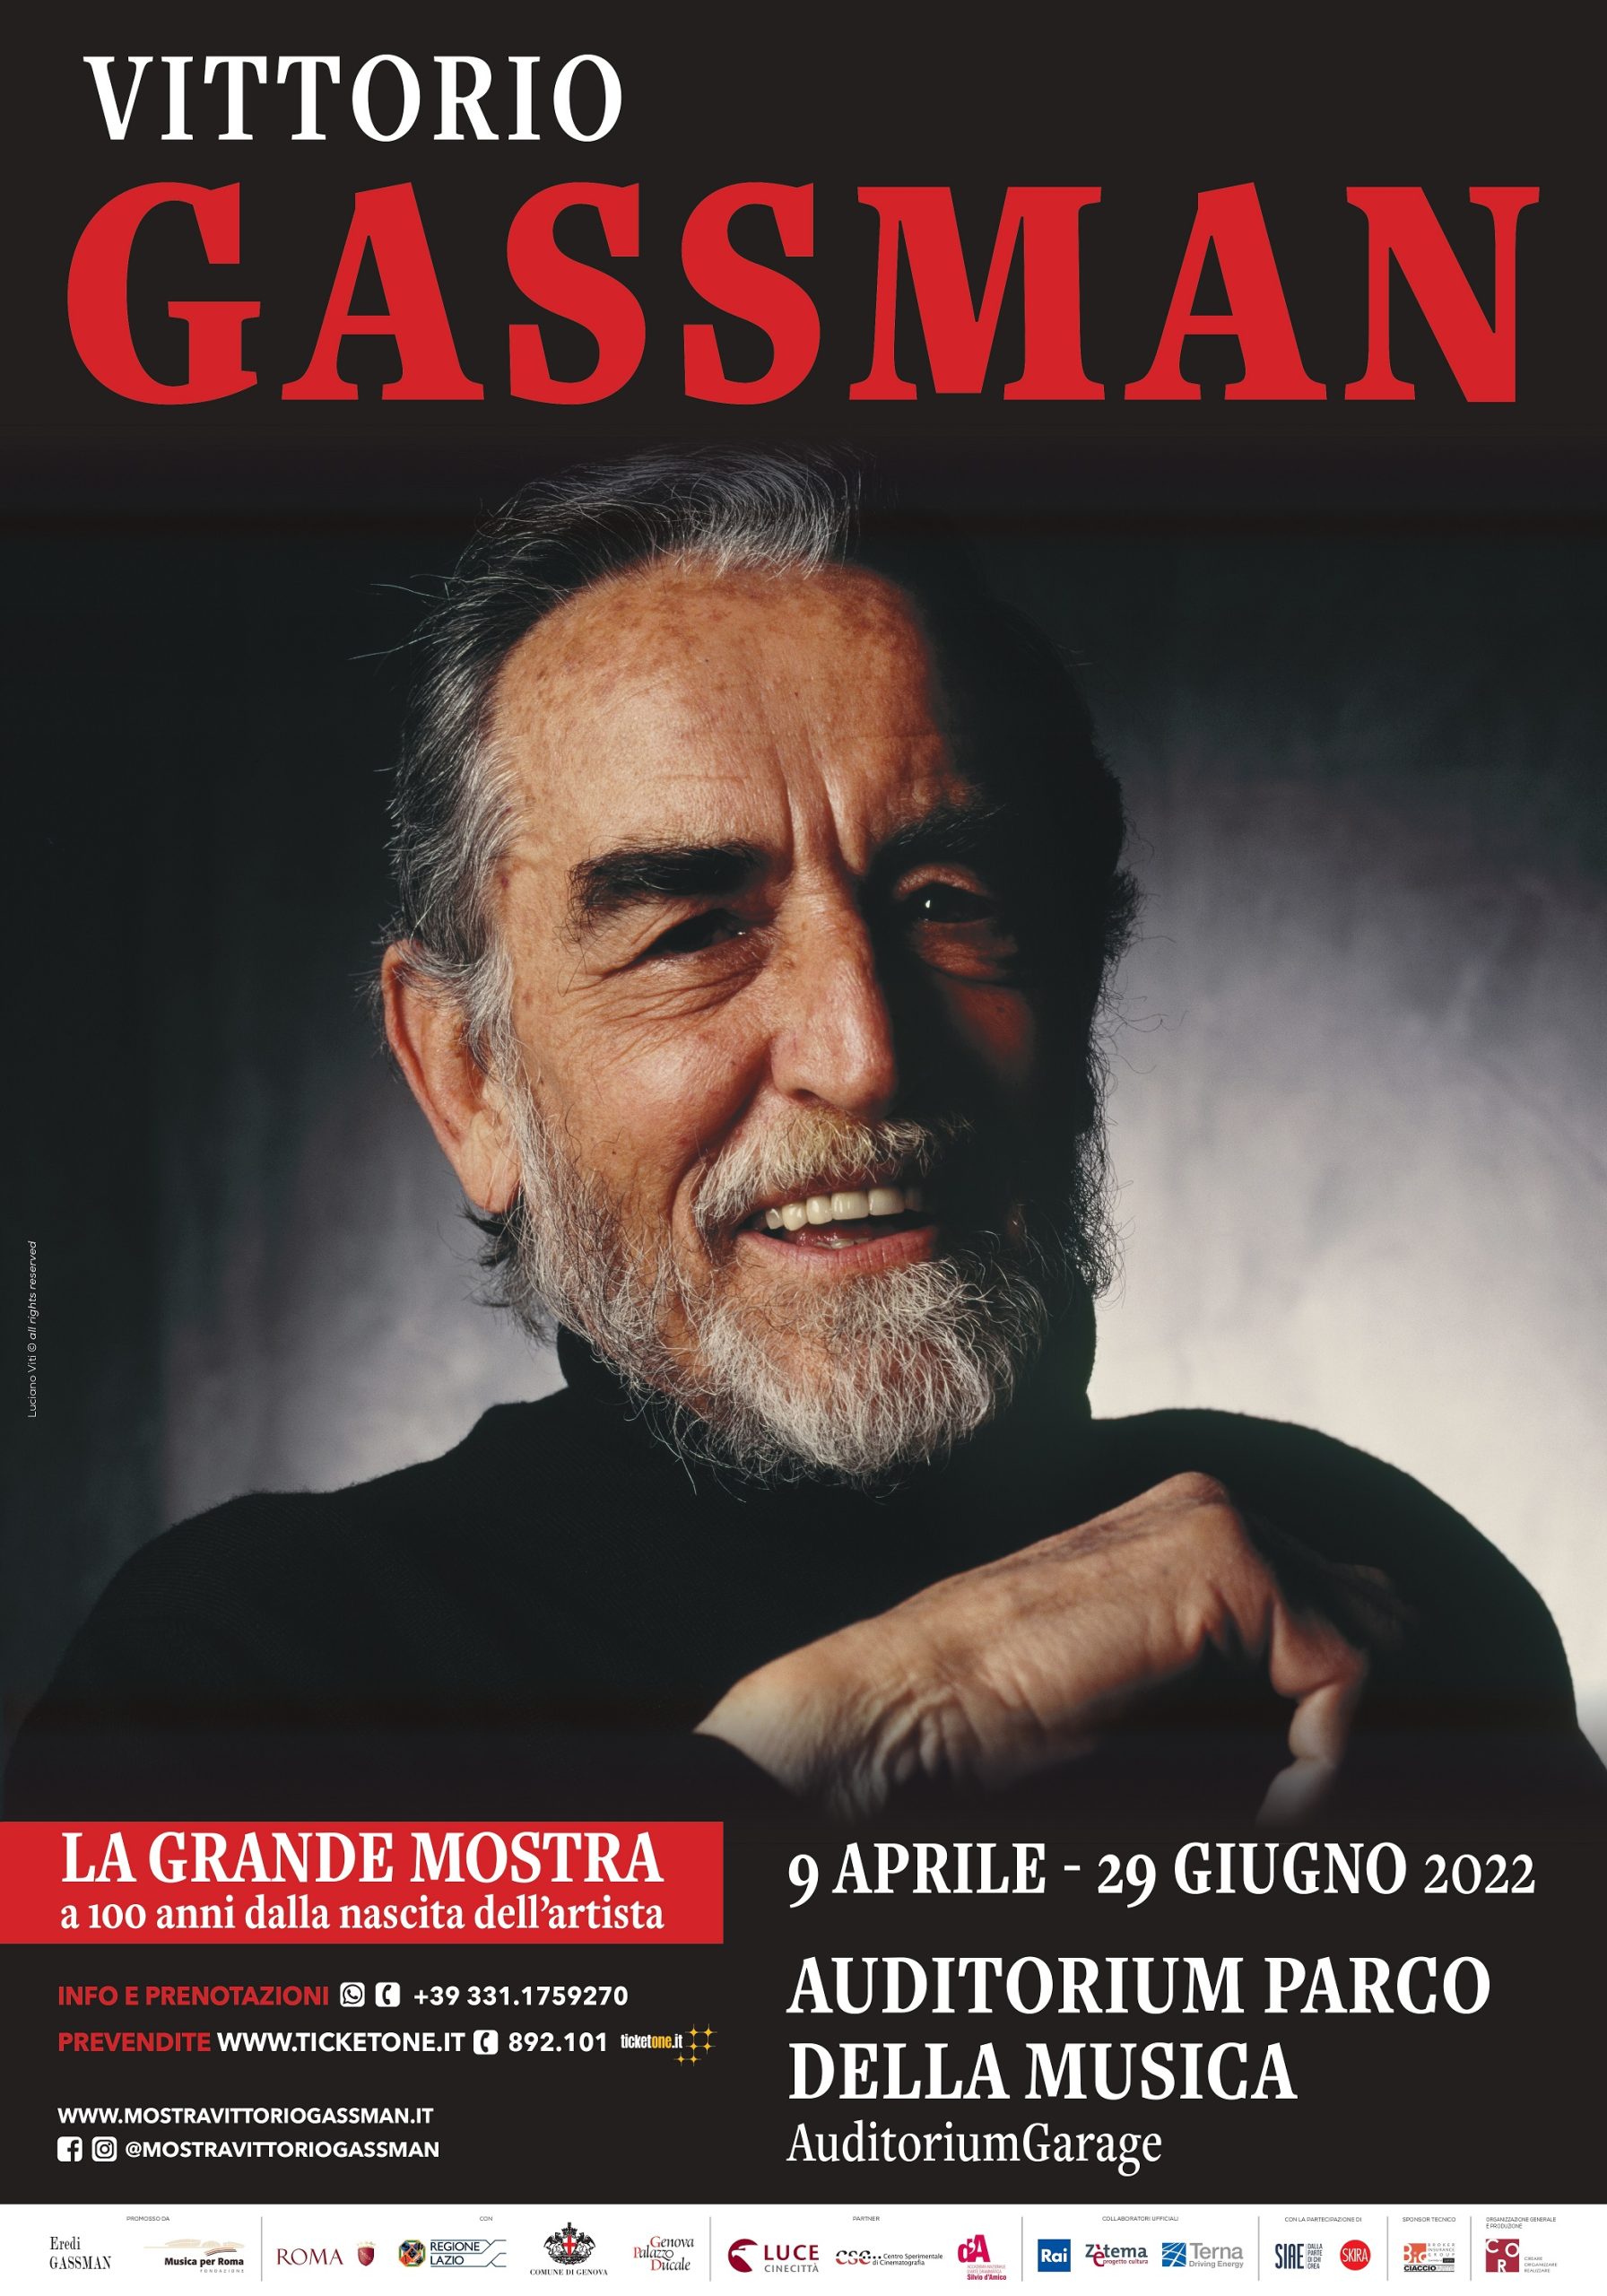 Prima mostra dedicata a Vittorio Gassman per il centenario della nascita (9 aprile – 29 giugno 2022)